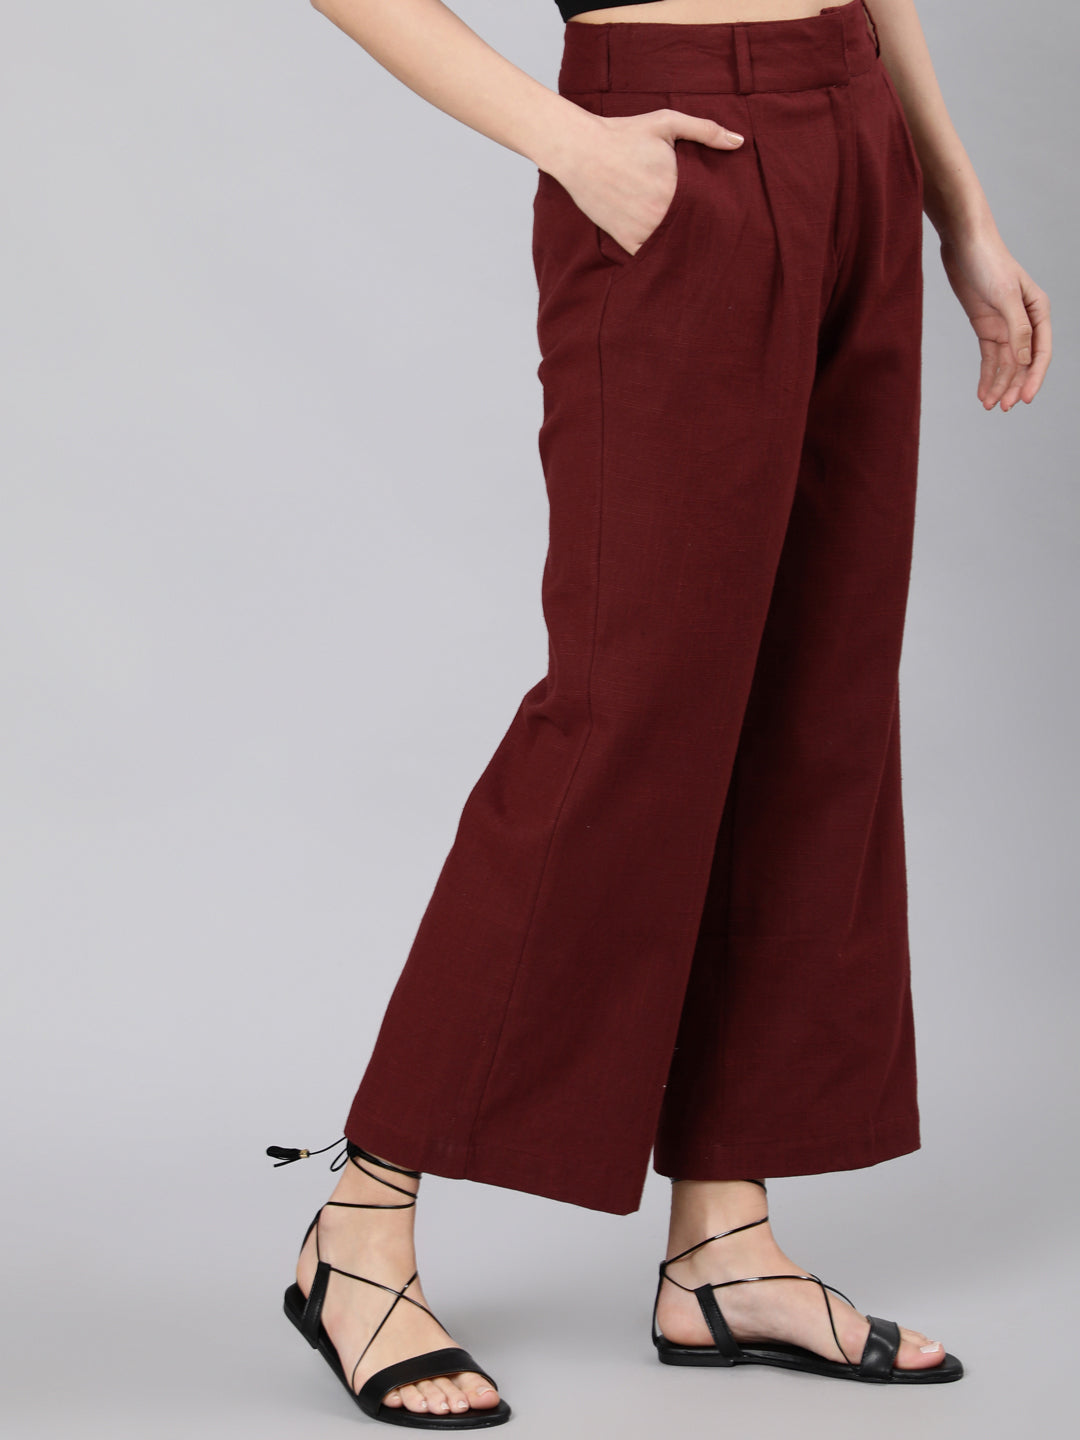 Shop parallel pants for women